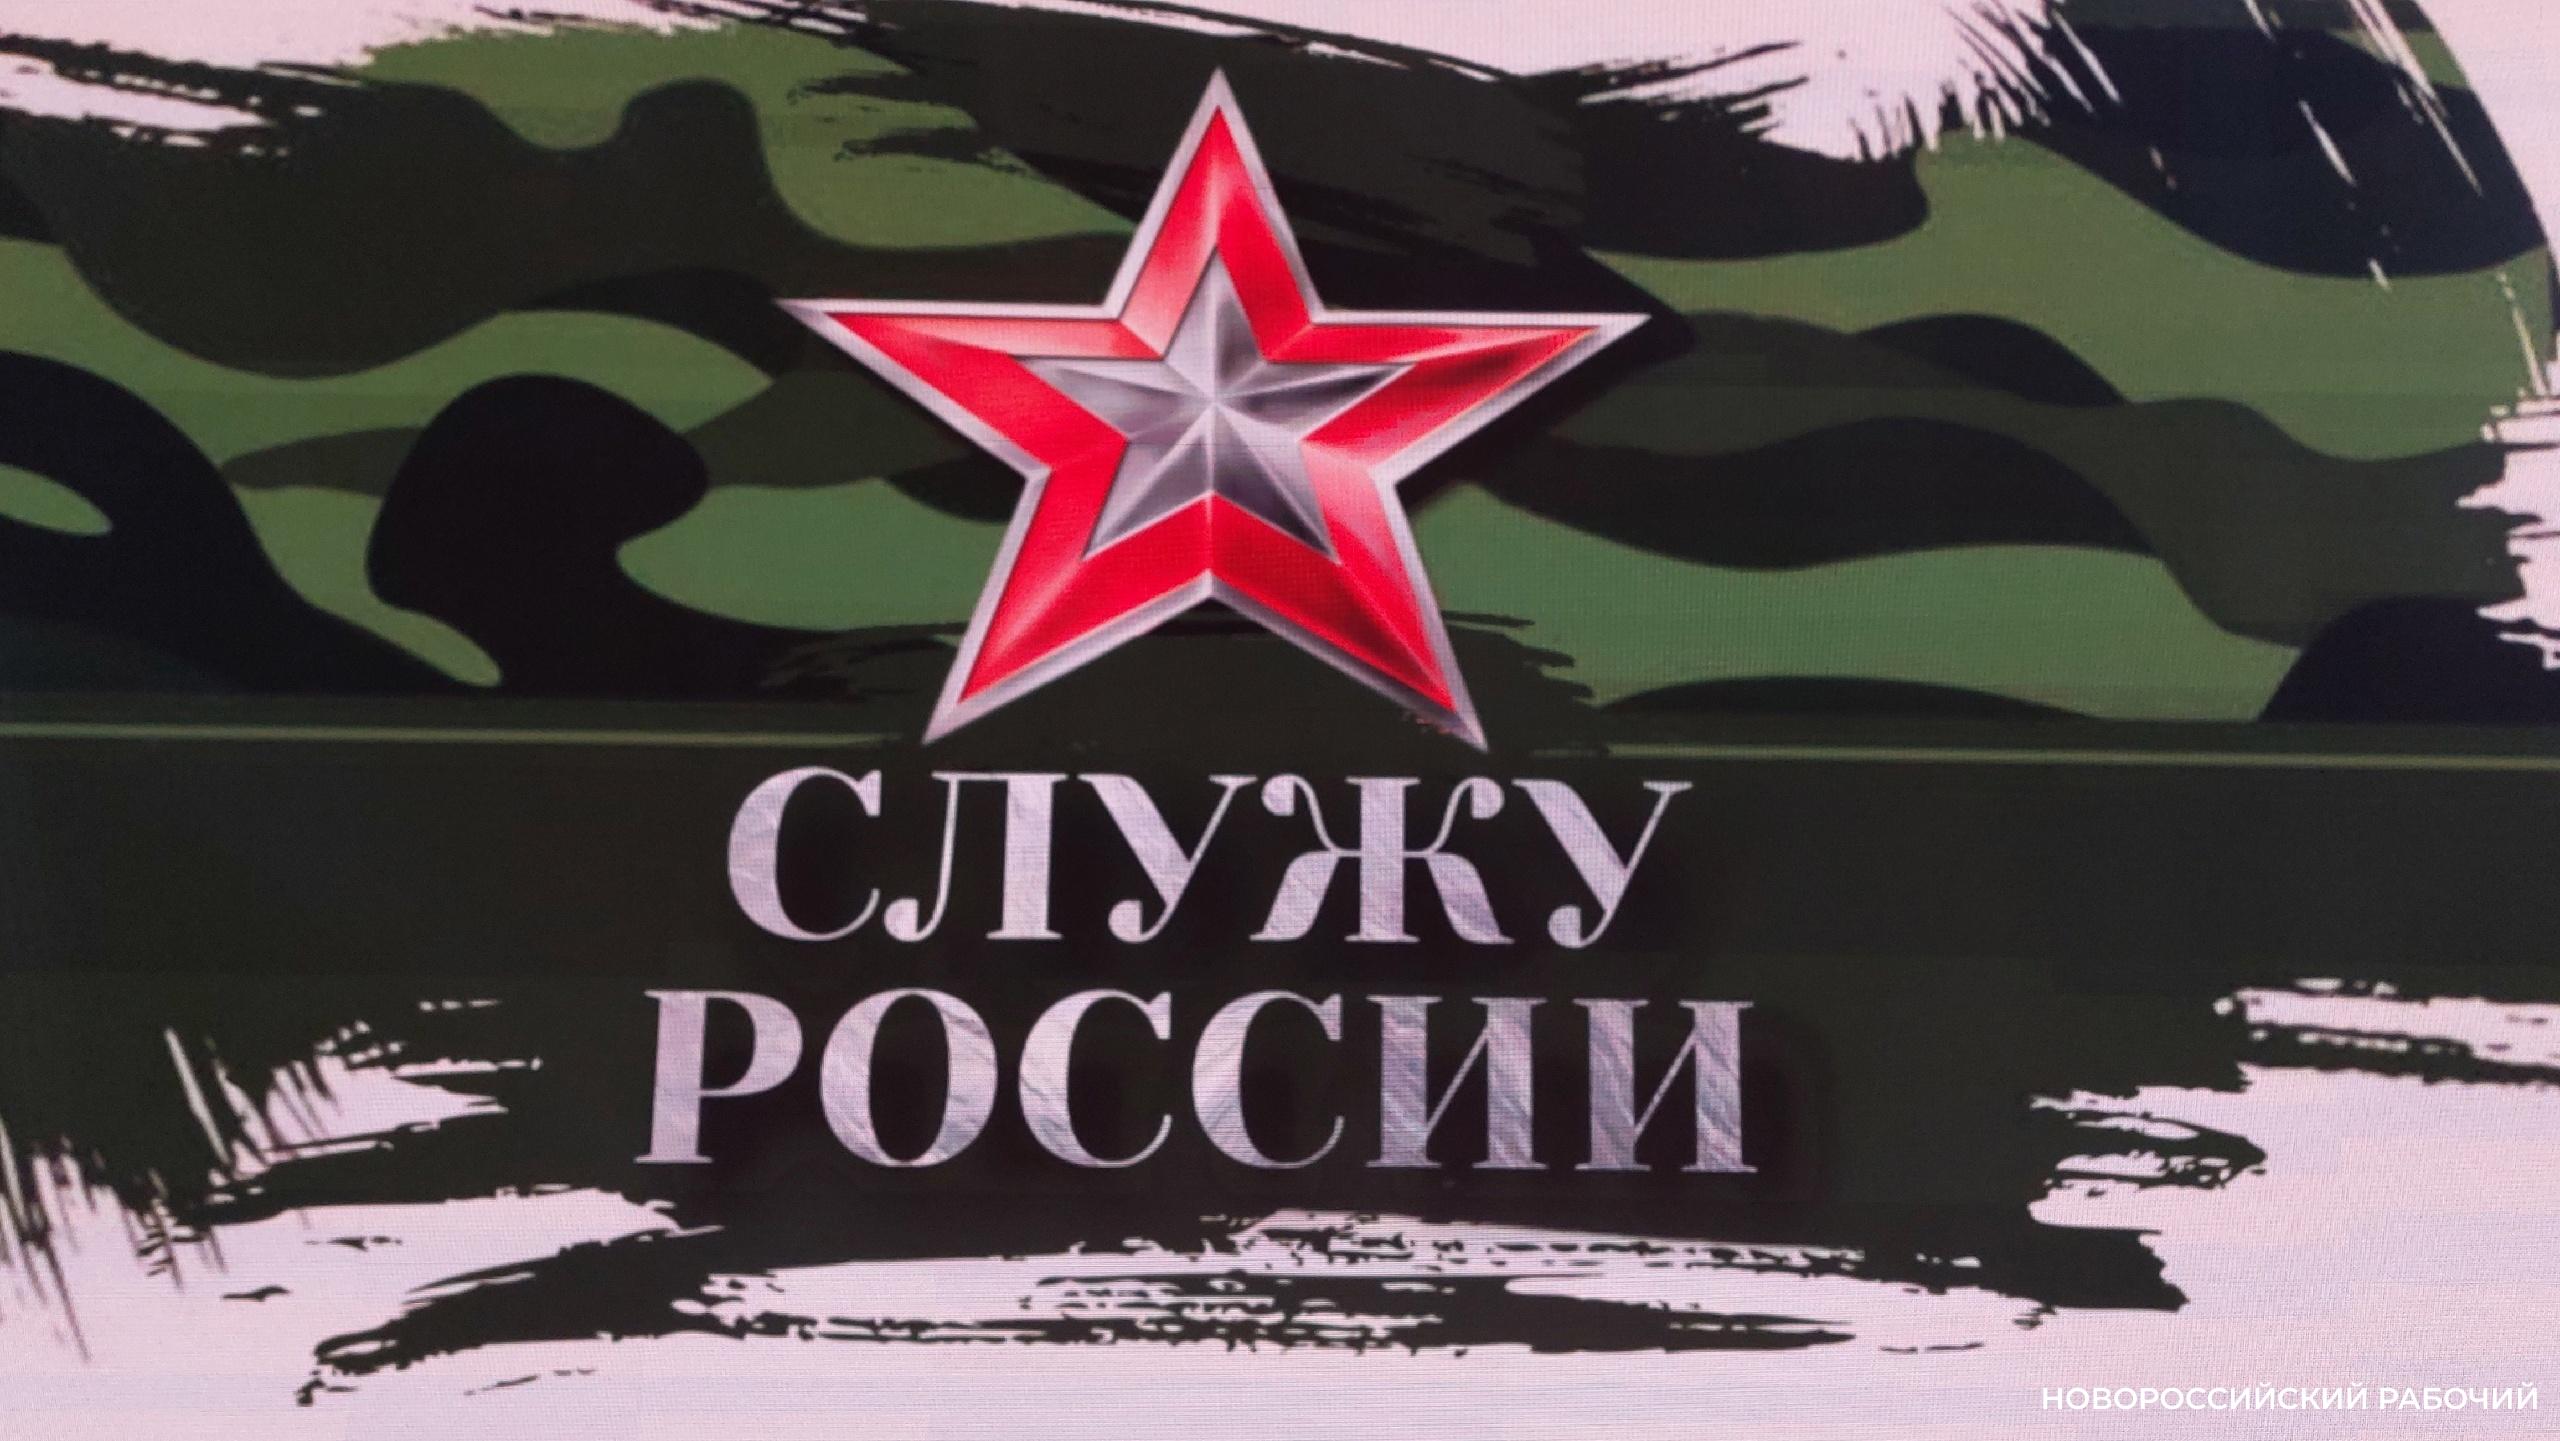 Военно-патриотическая акция «Служу России» прошла в Новороссийске накануне празднования Дня защитника Отечества.